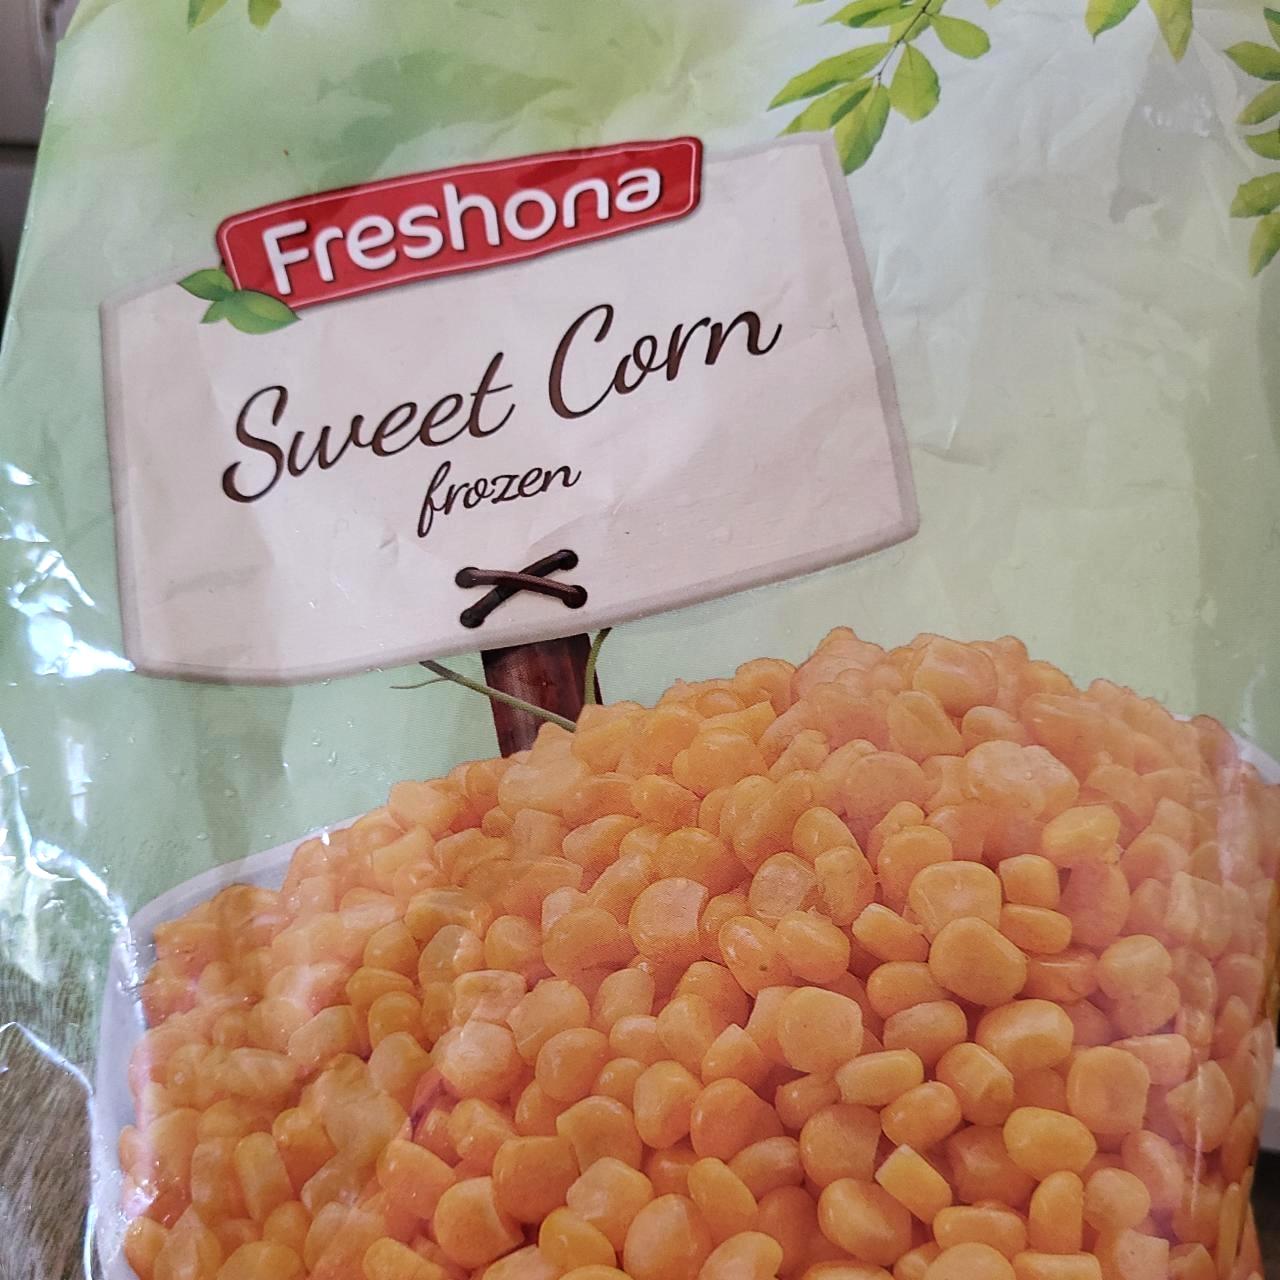 Képek - Sweet corn frozen Freshona